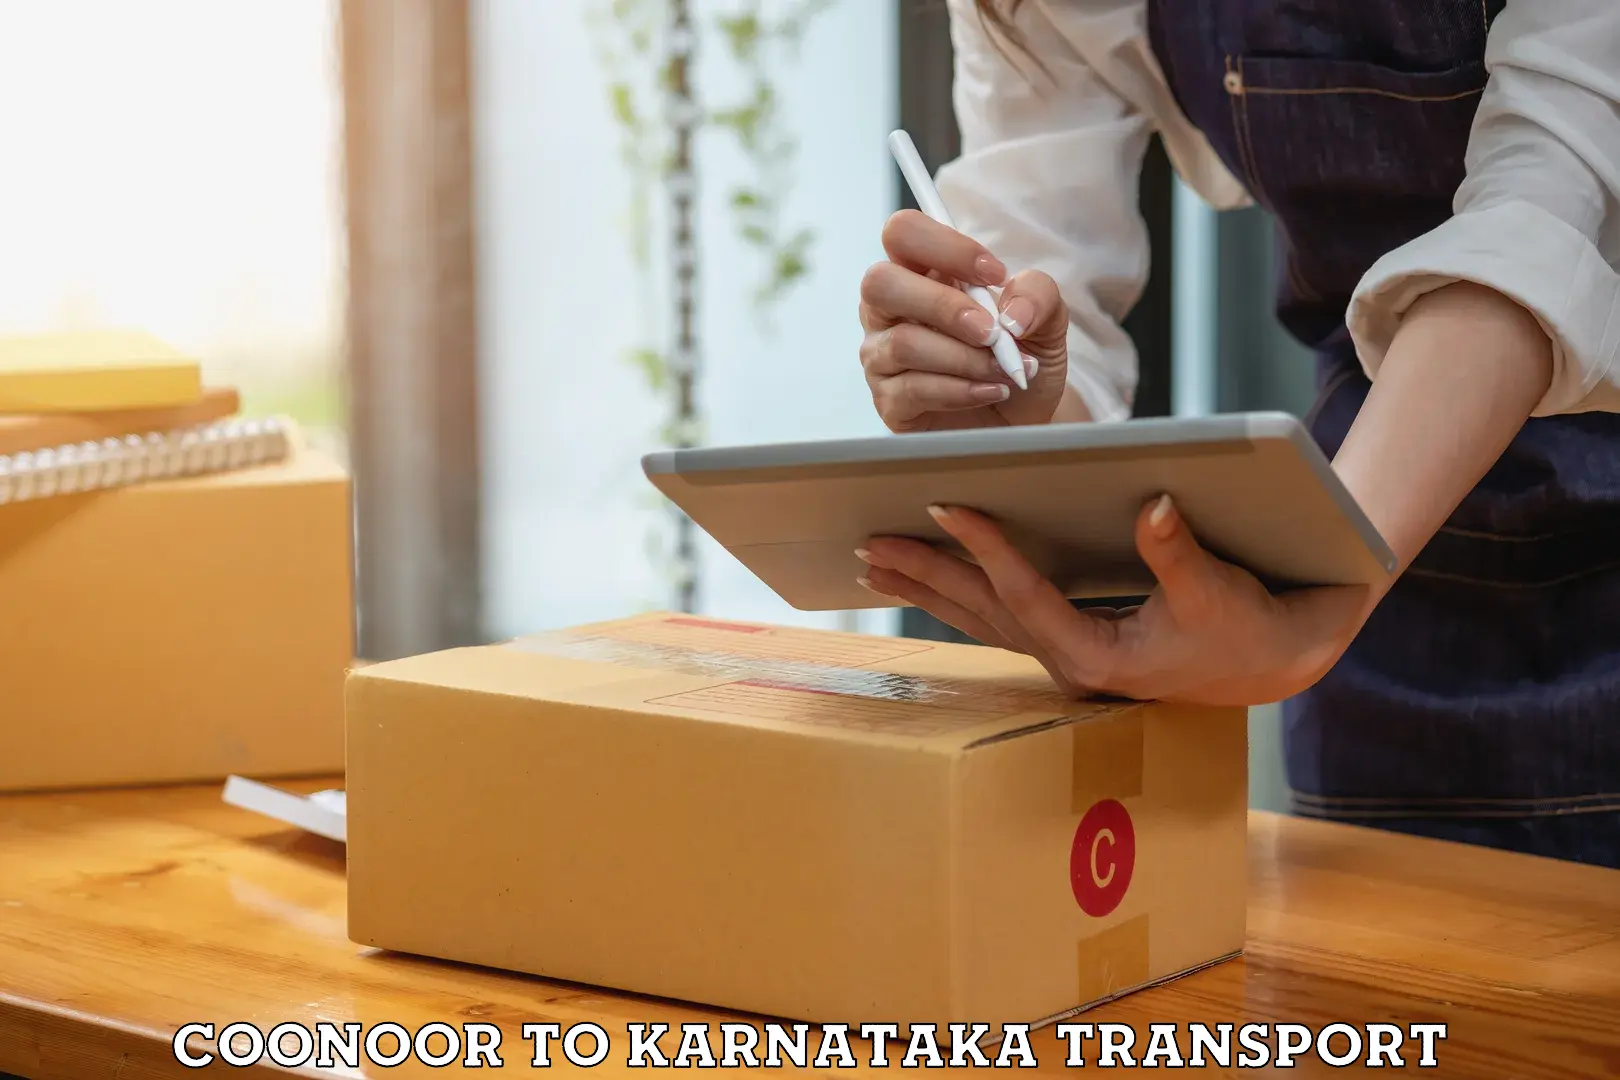 Furniture transport service Coonoor to Karnataka